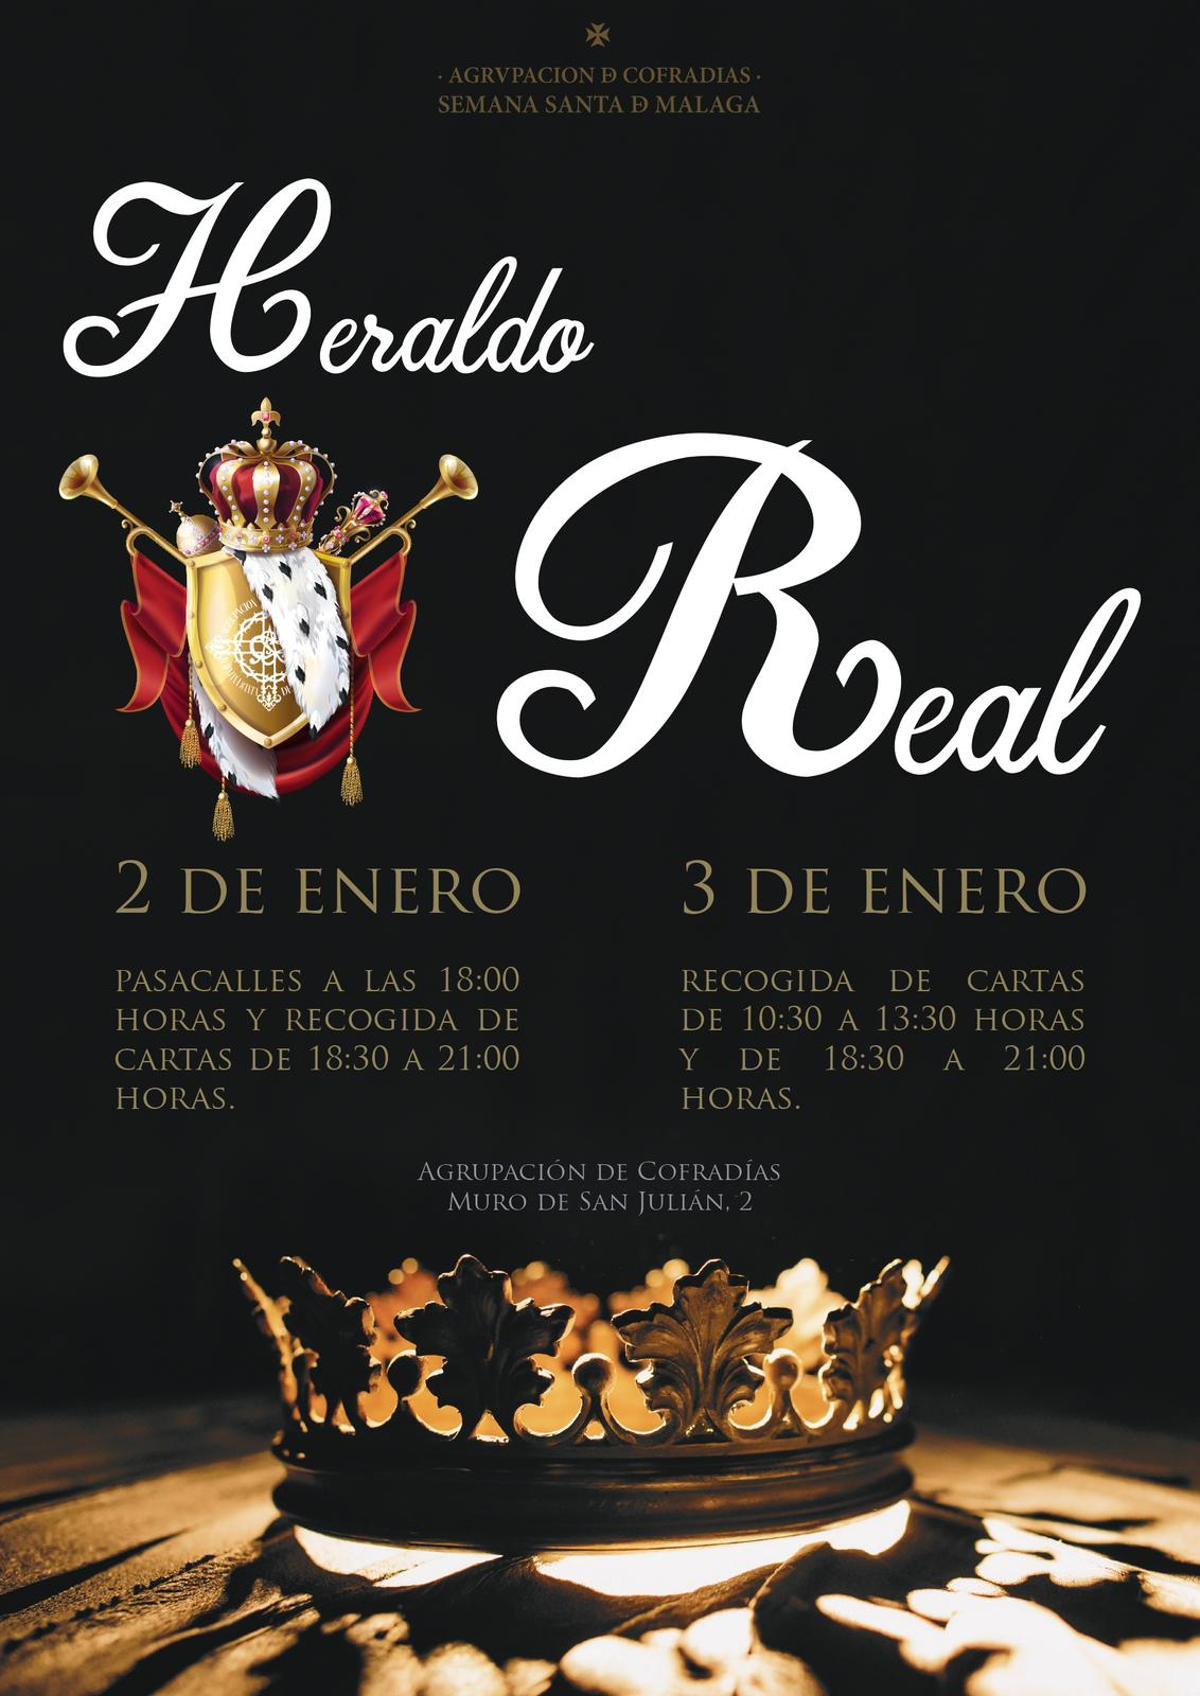 Cartel anunciador de la visita del heraldo de los Reyes a la Agrupación de Cofradías.